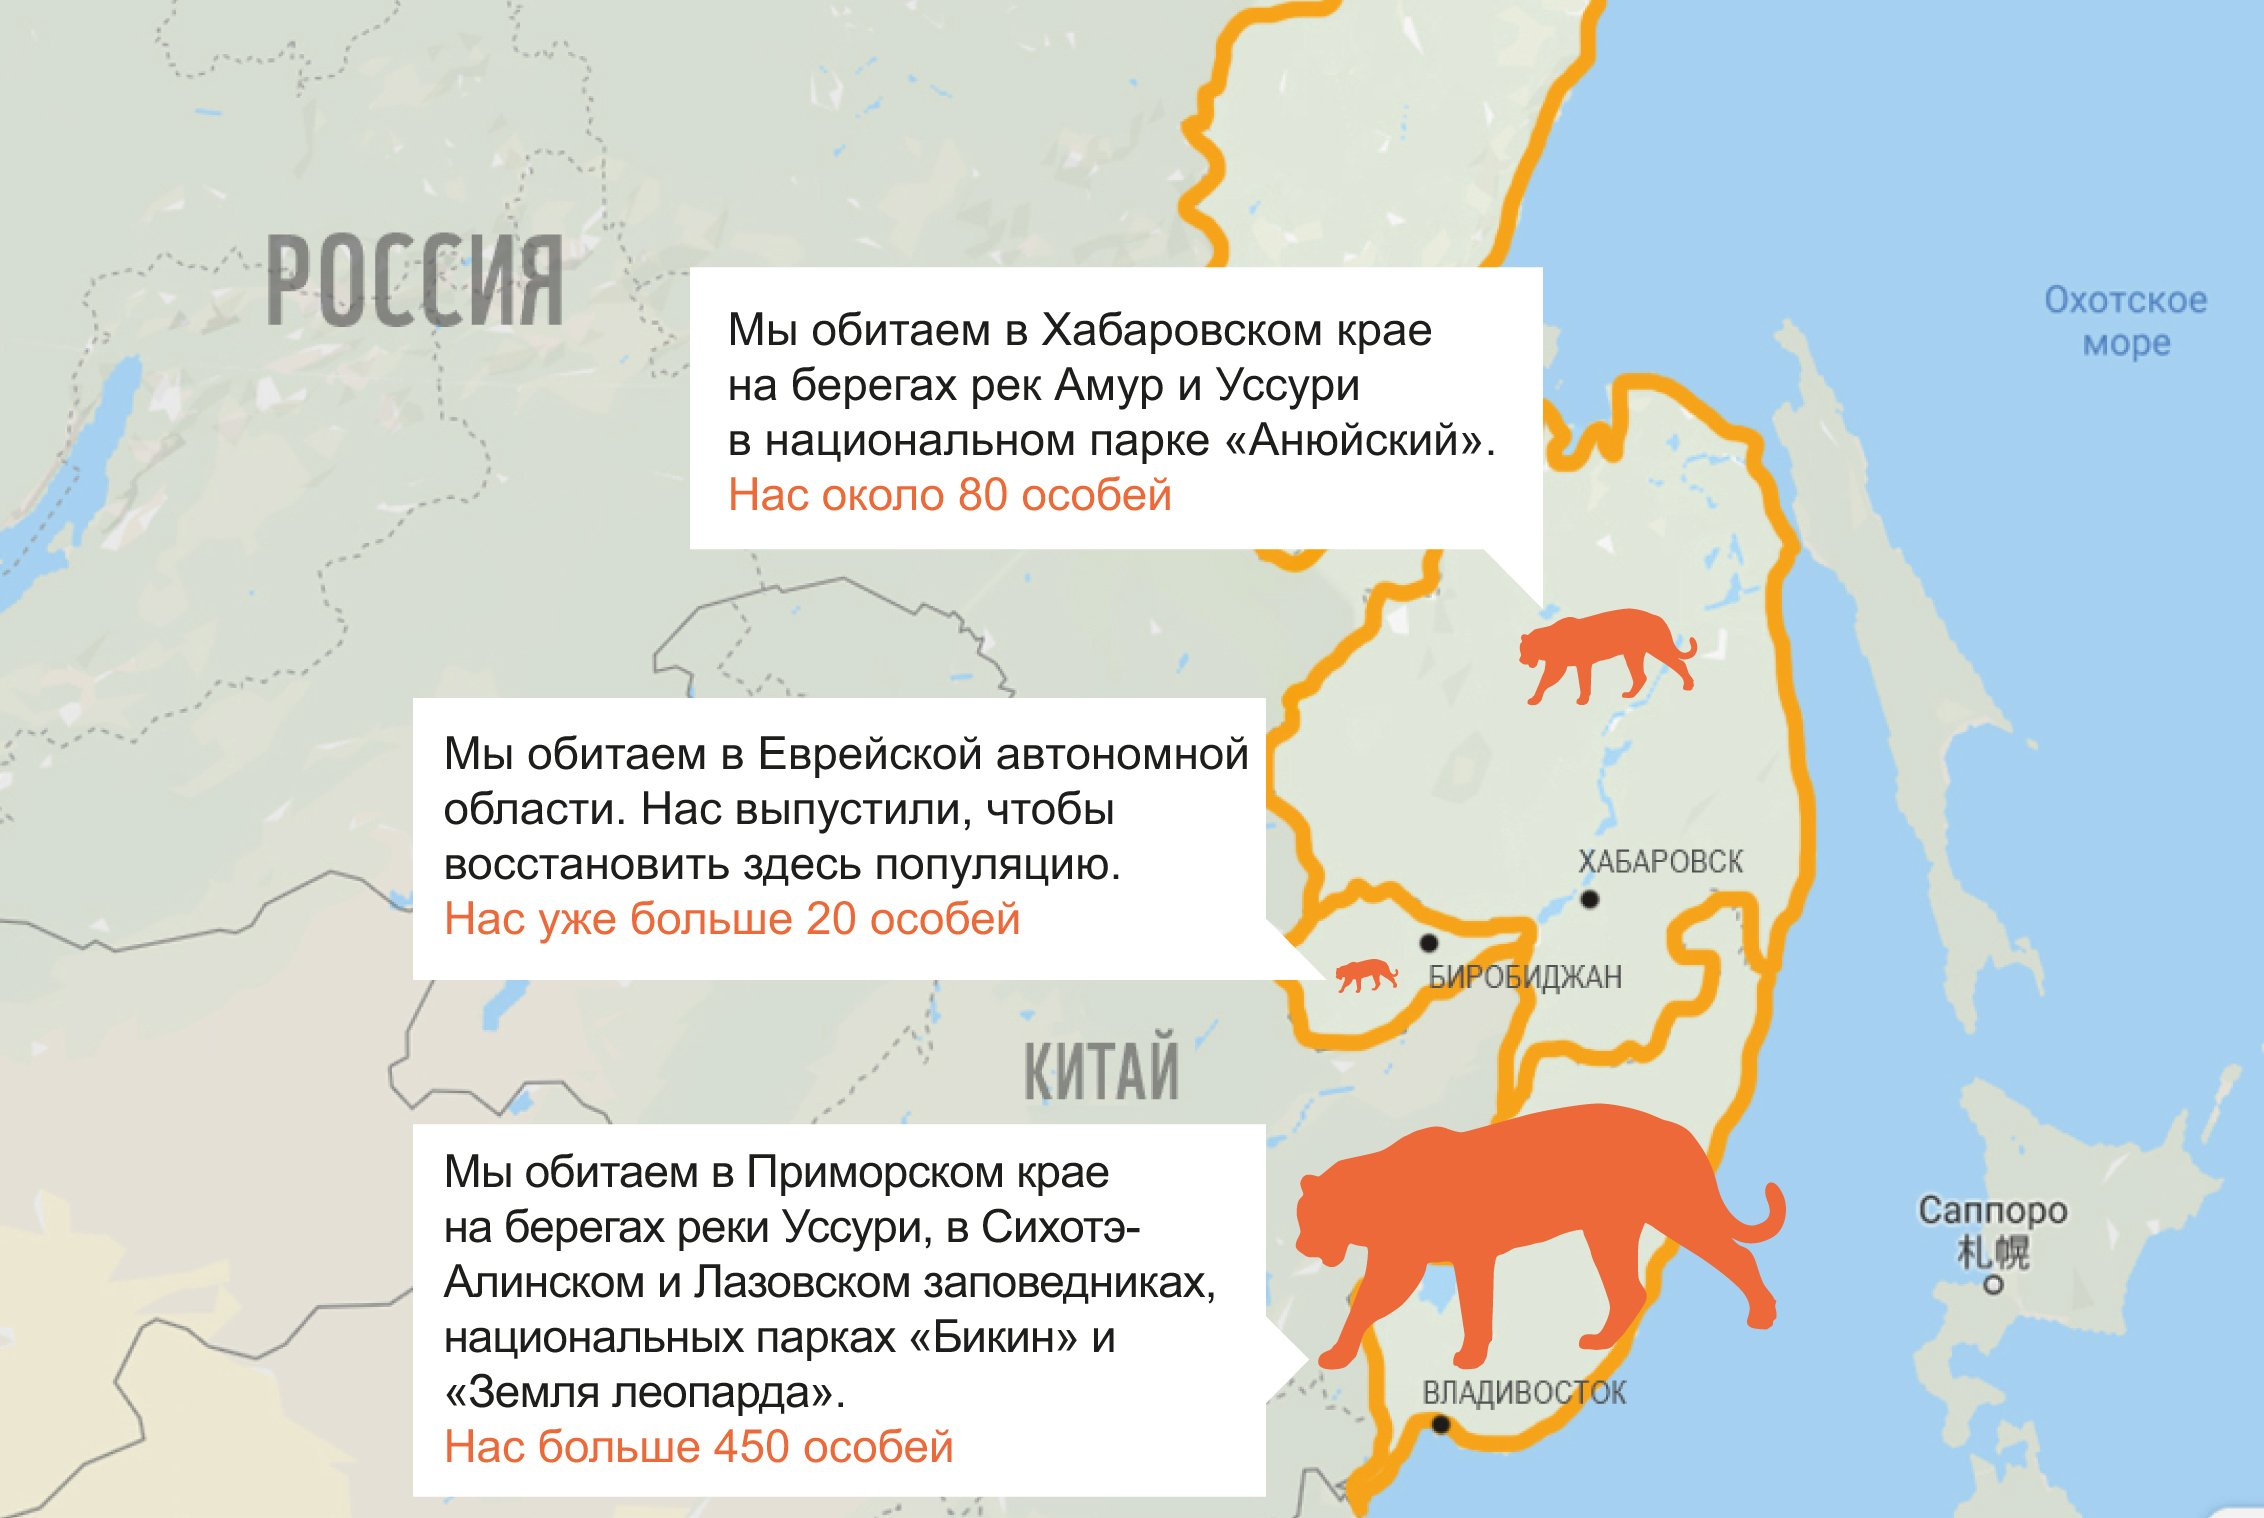 Уссурийский тигр где. Место обитания Амурского тигра. Амурский тигр ареал обитания в России. Где живет Амурский тигр на карте. Ареал обитания Амурского тигра.